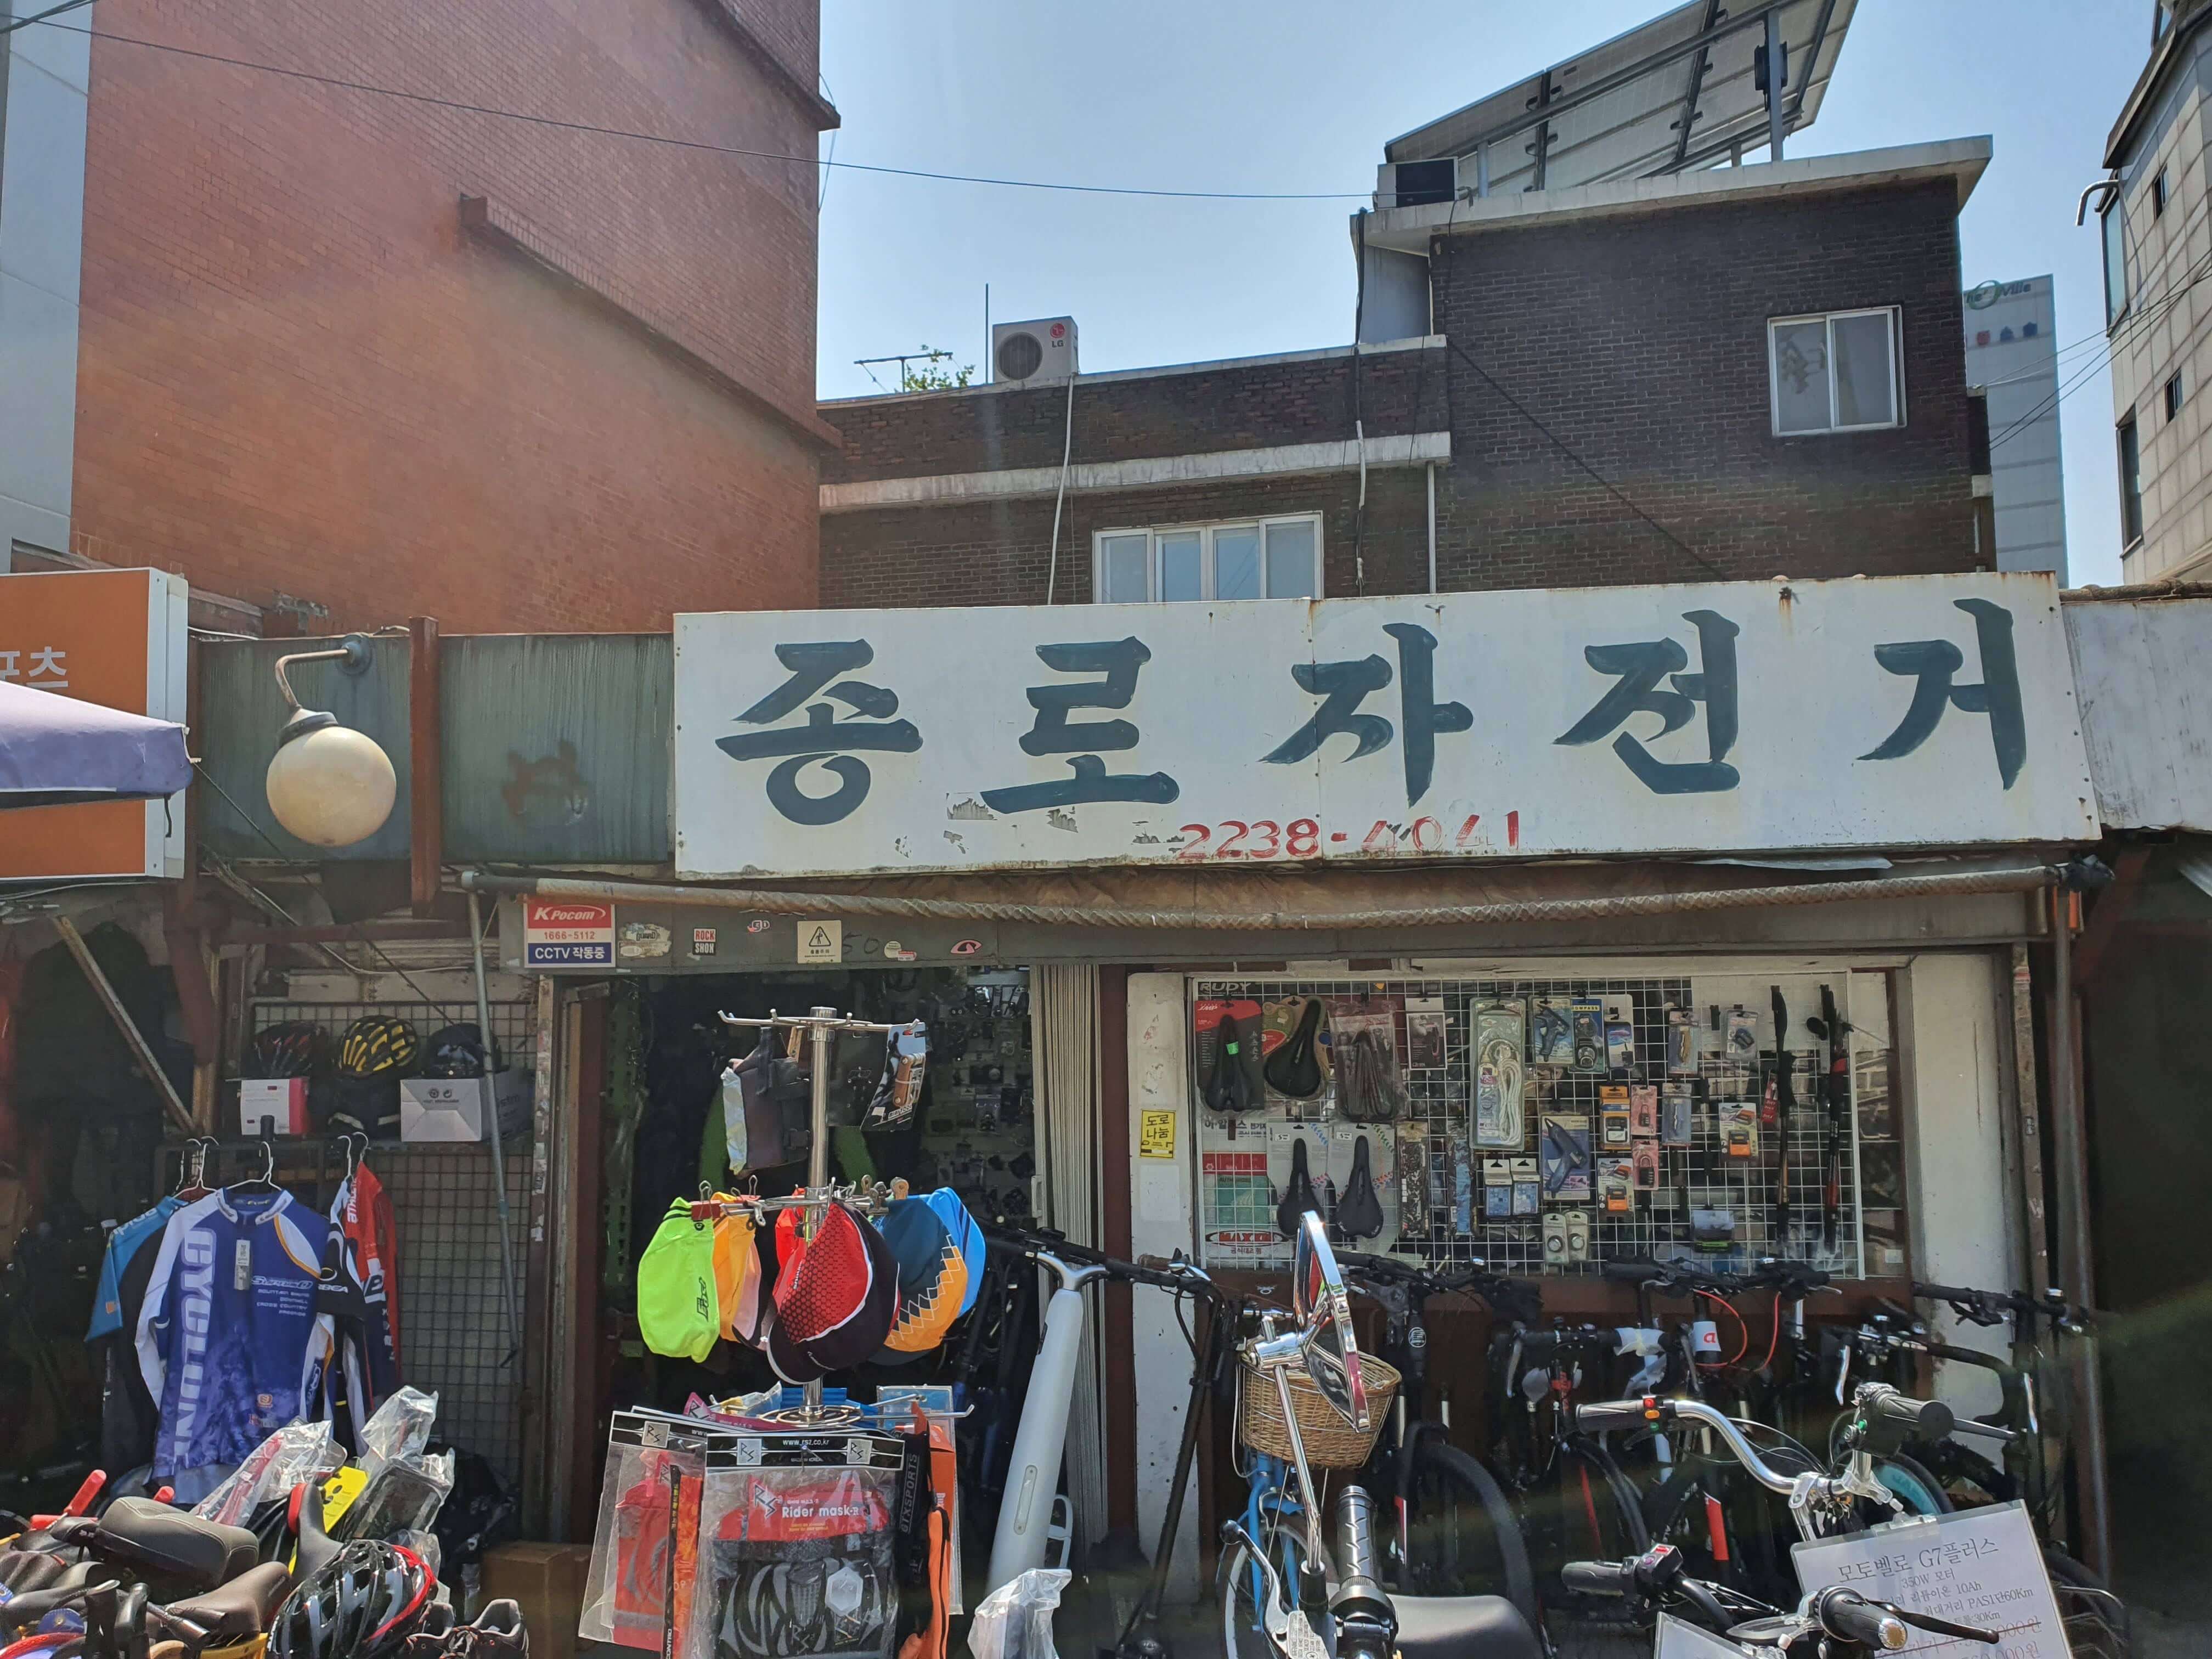 종로자전거라고 적힌 상점 자전거 용품들이 전시되어 있는 모습.오래된 상점으로 보여지는 곳&#44;